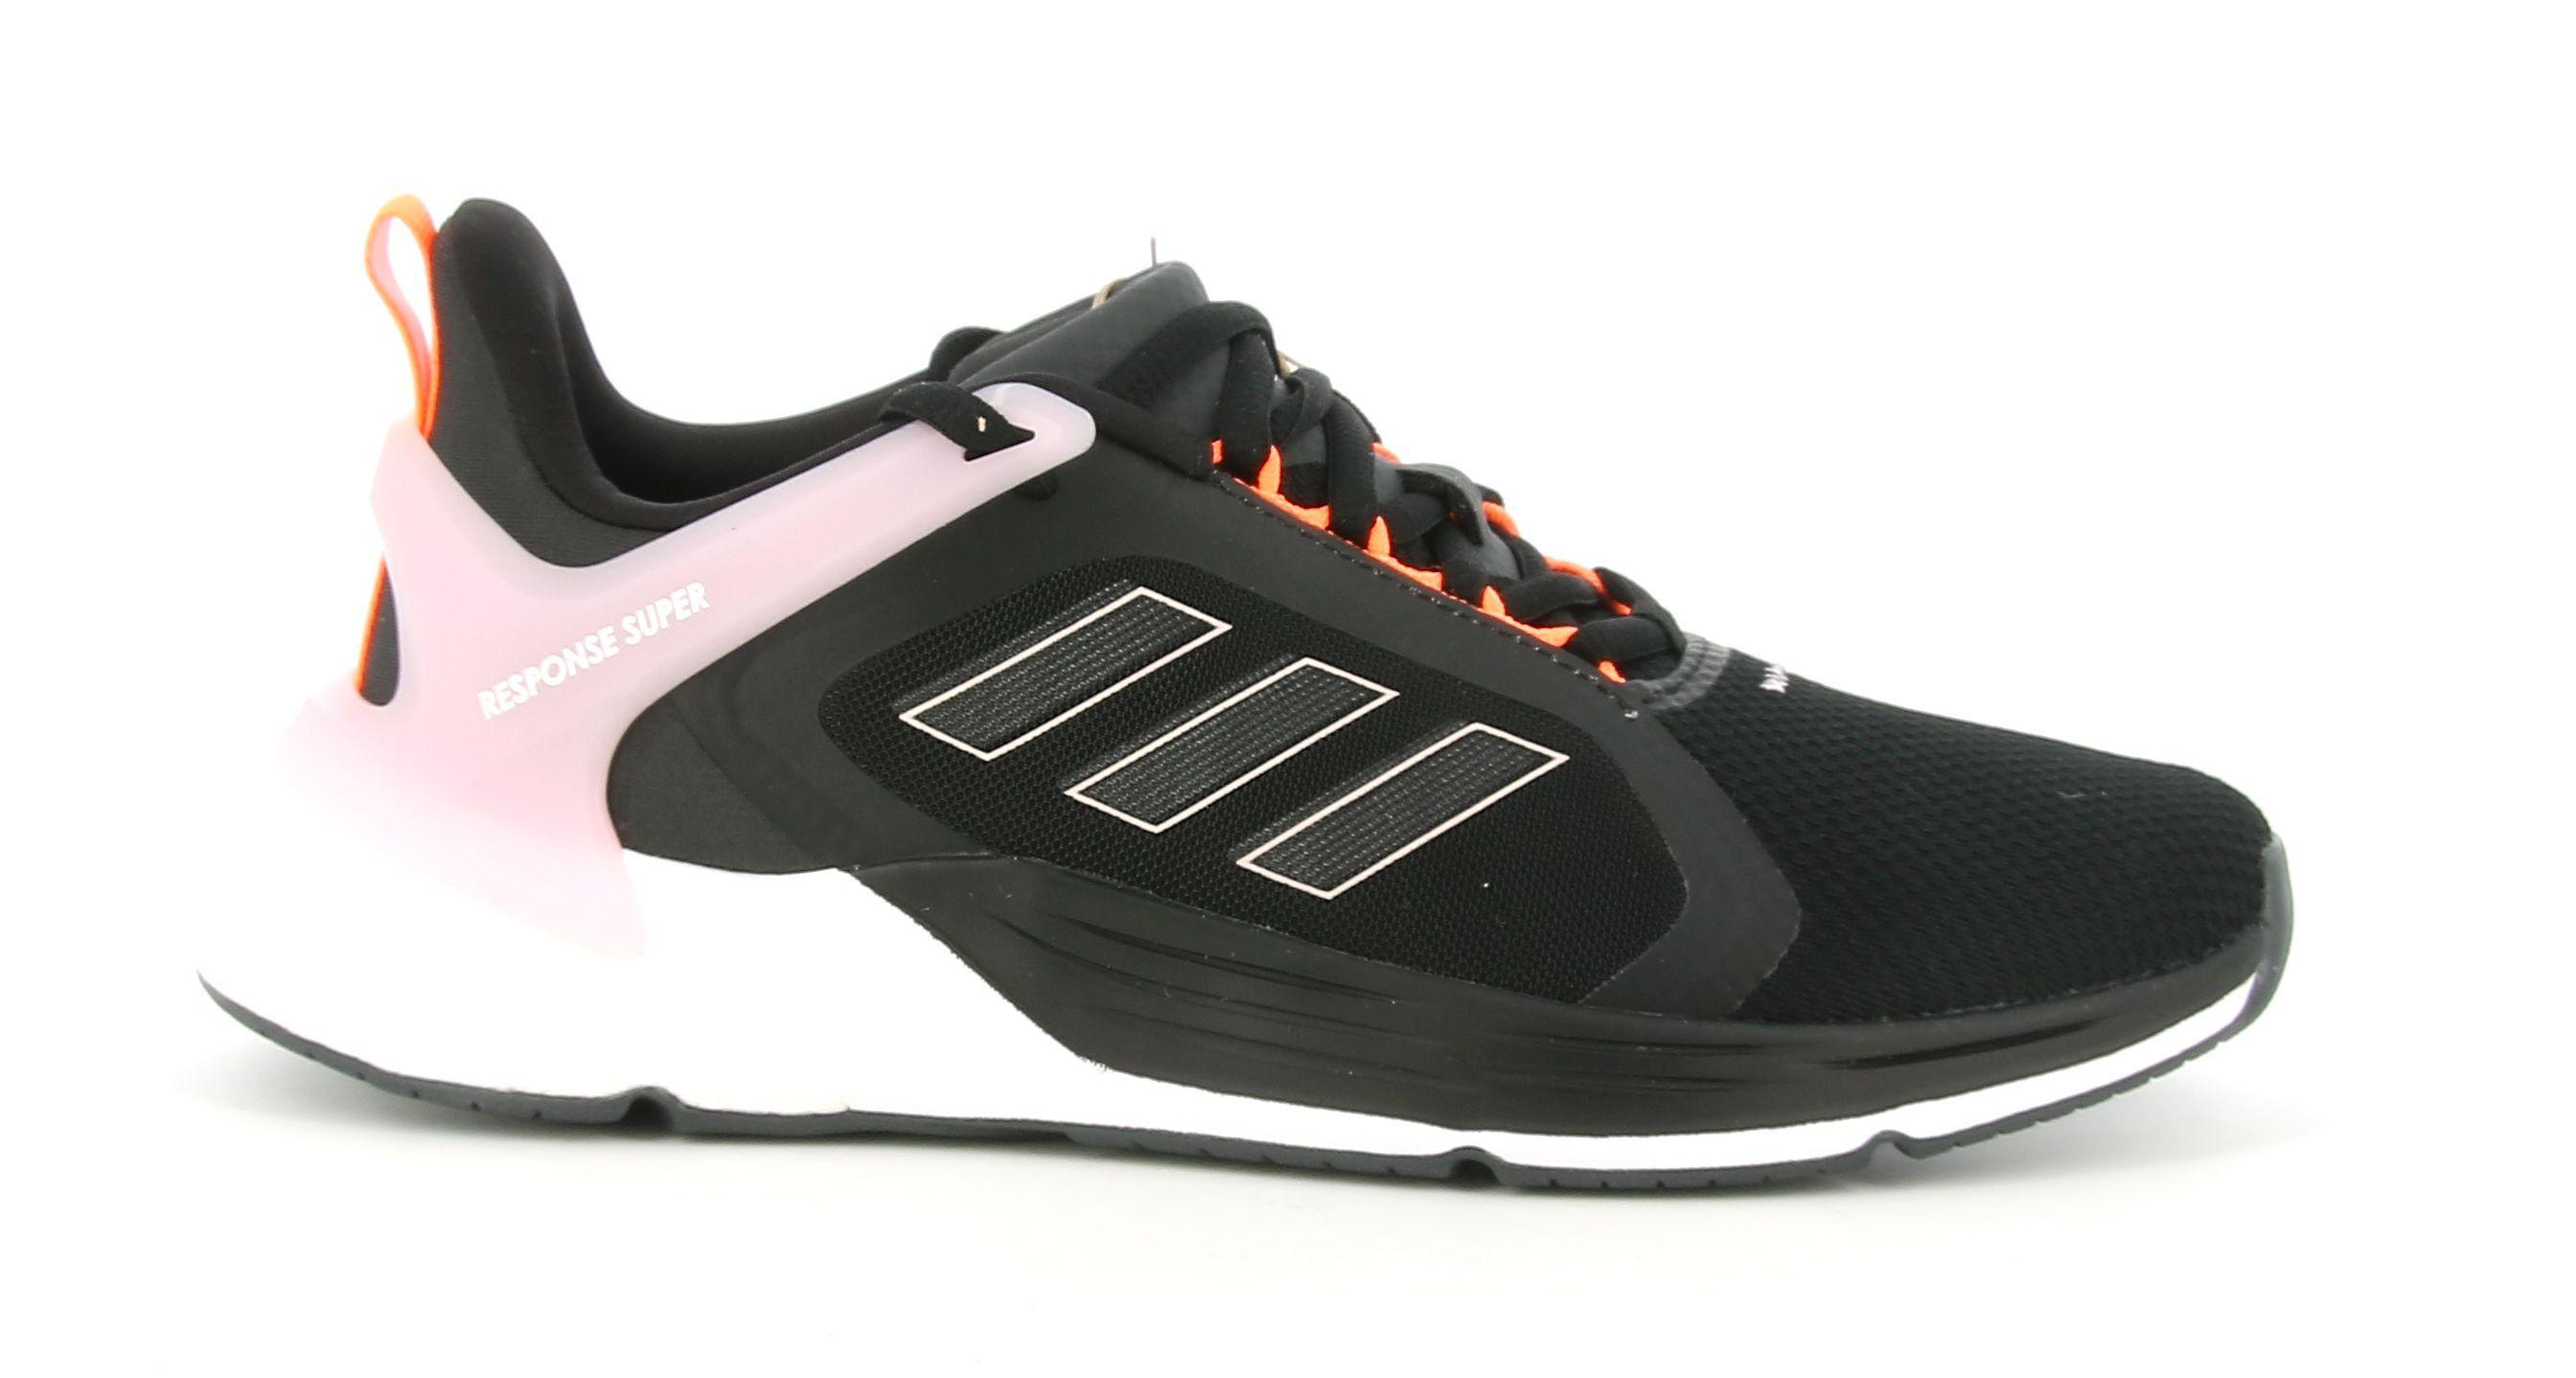 adidas scarpa sportiva adidas response super 2.0 h02027. da donna, colore nero